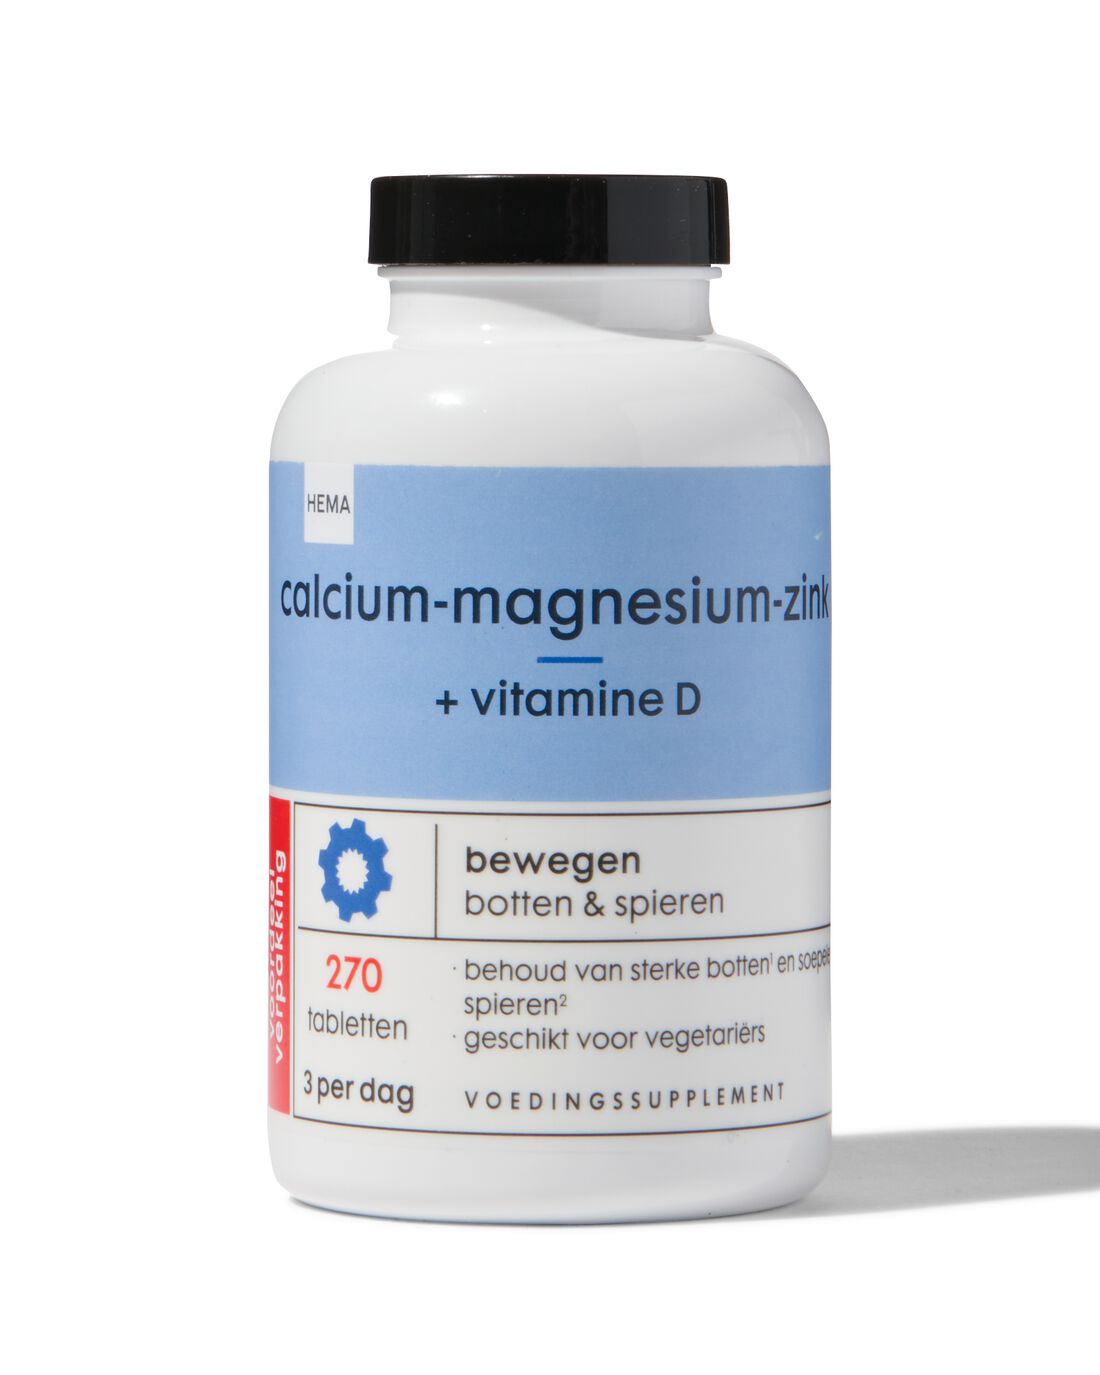 HEMA Calcium-magnesium-zink + Vitamine D 270 Stuks